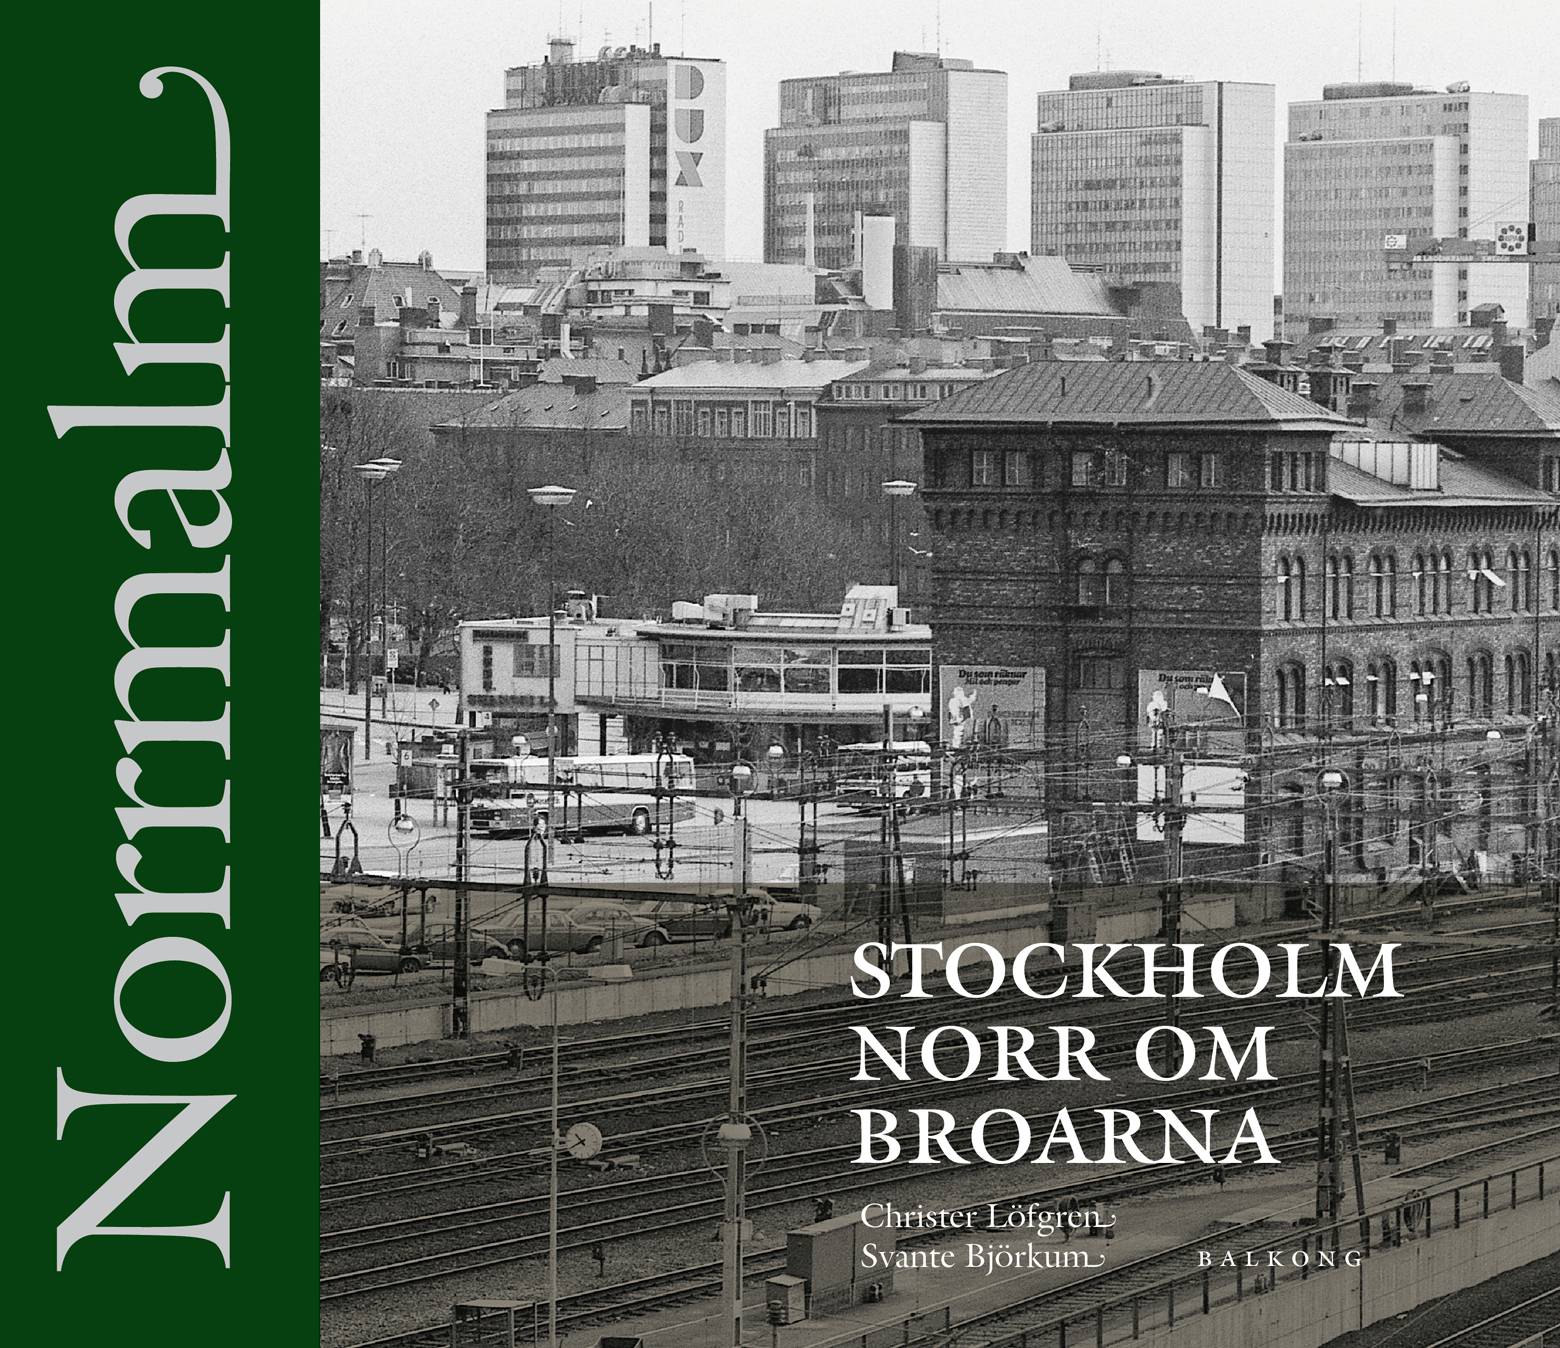 Norrmalm - Stockholm norr om broarna